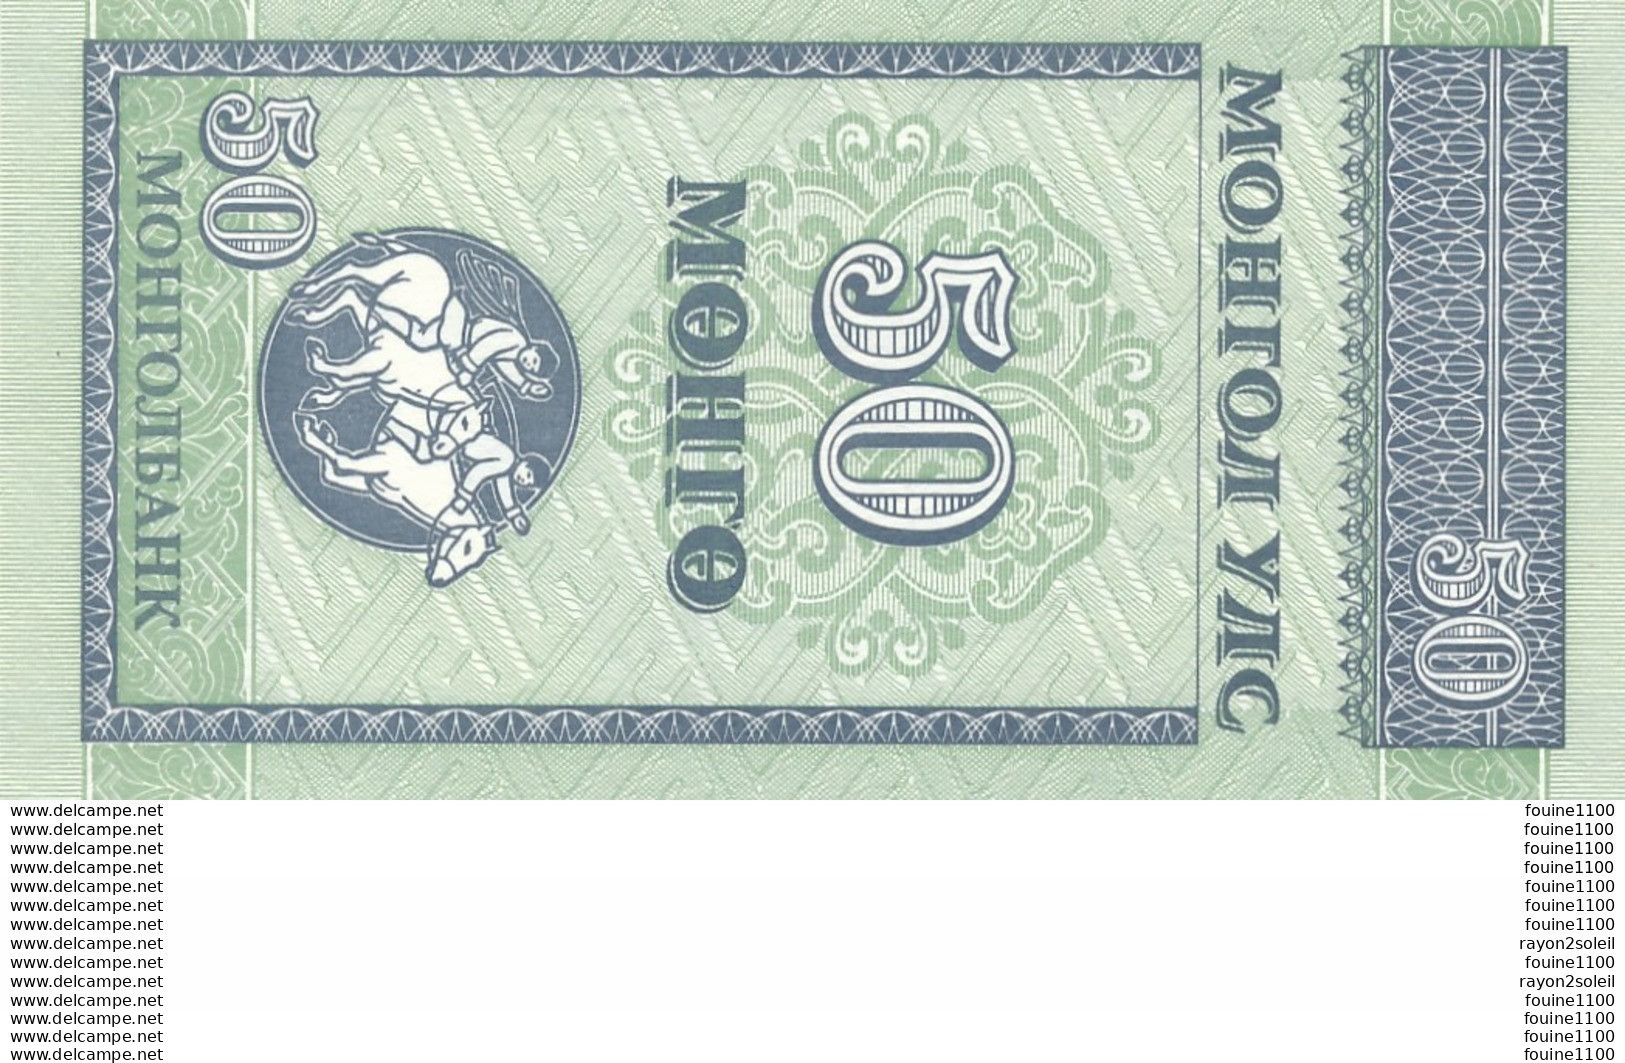 Billet  De Banque Mongolie 50 Mohro - Mongolia